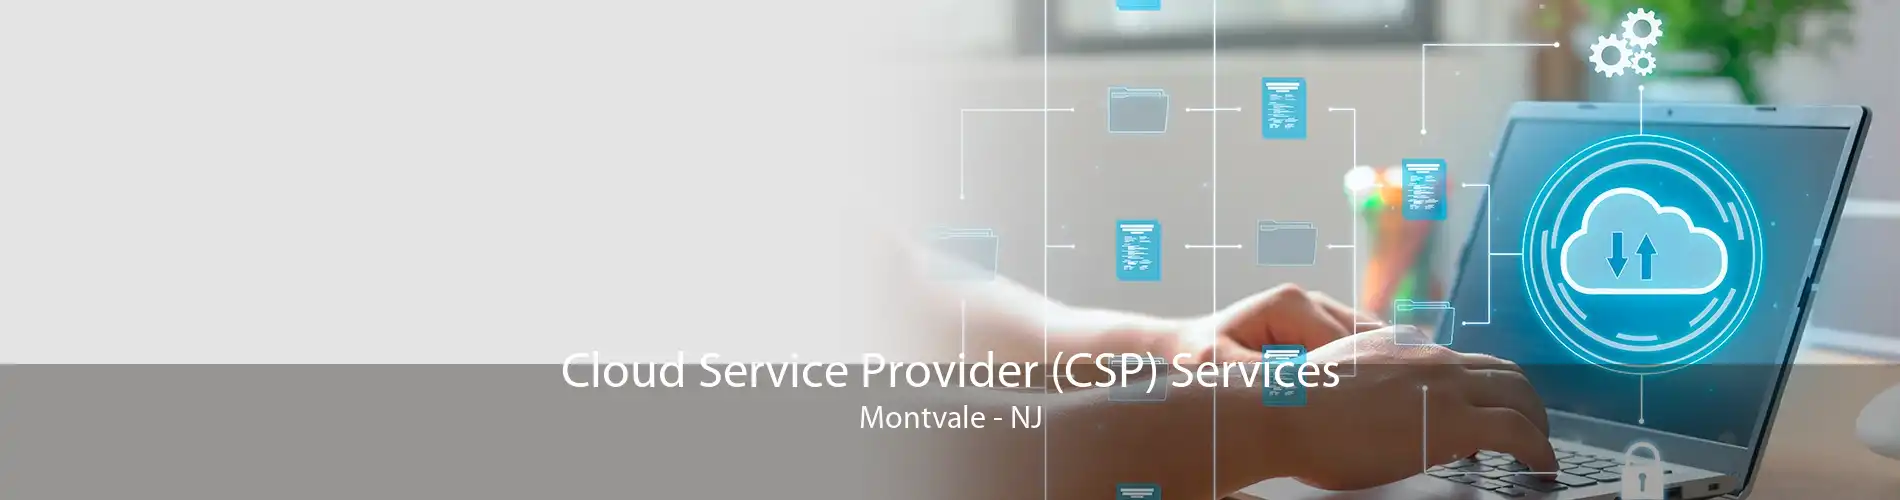 Cloud Service Provider (CSP) Services Montvale - NJ